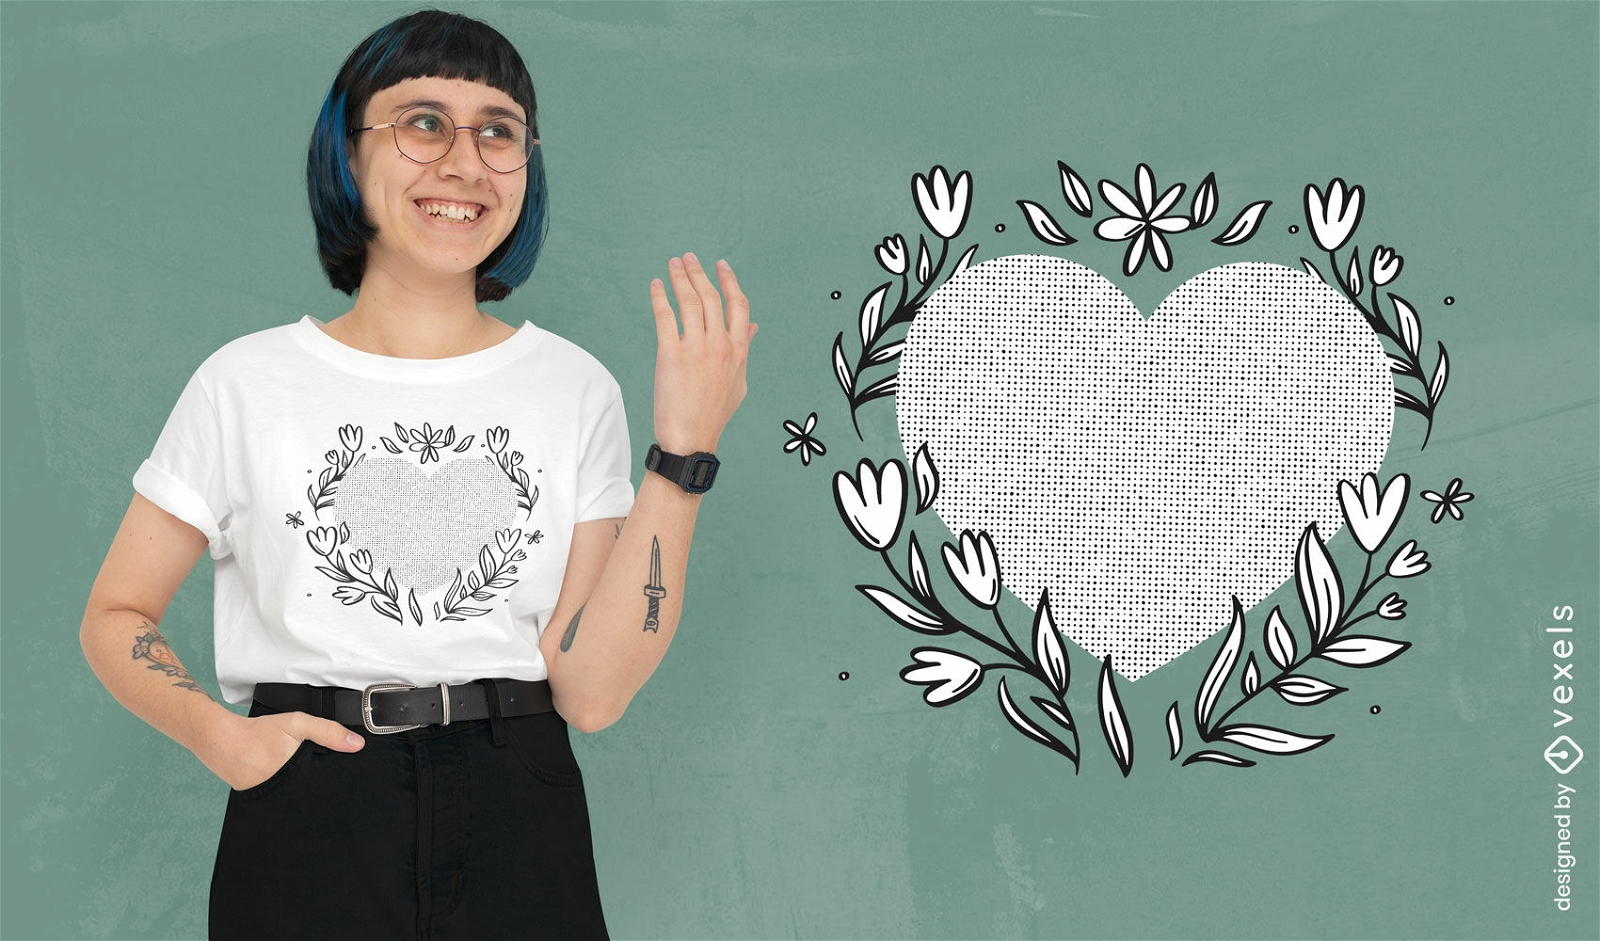 Herz und Blumen s??es T-Shirt-Design